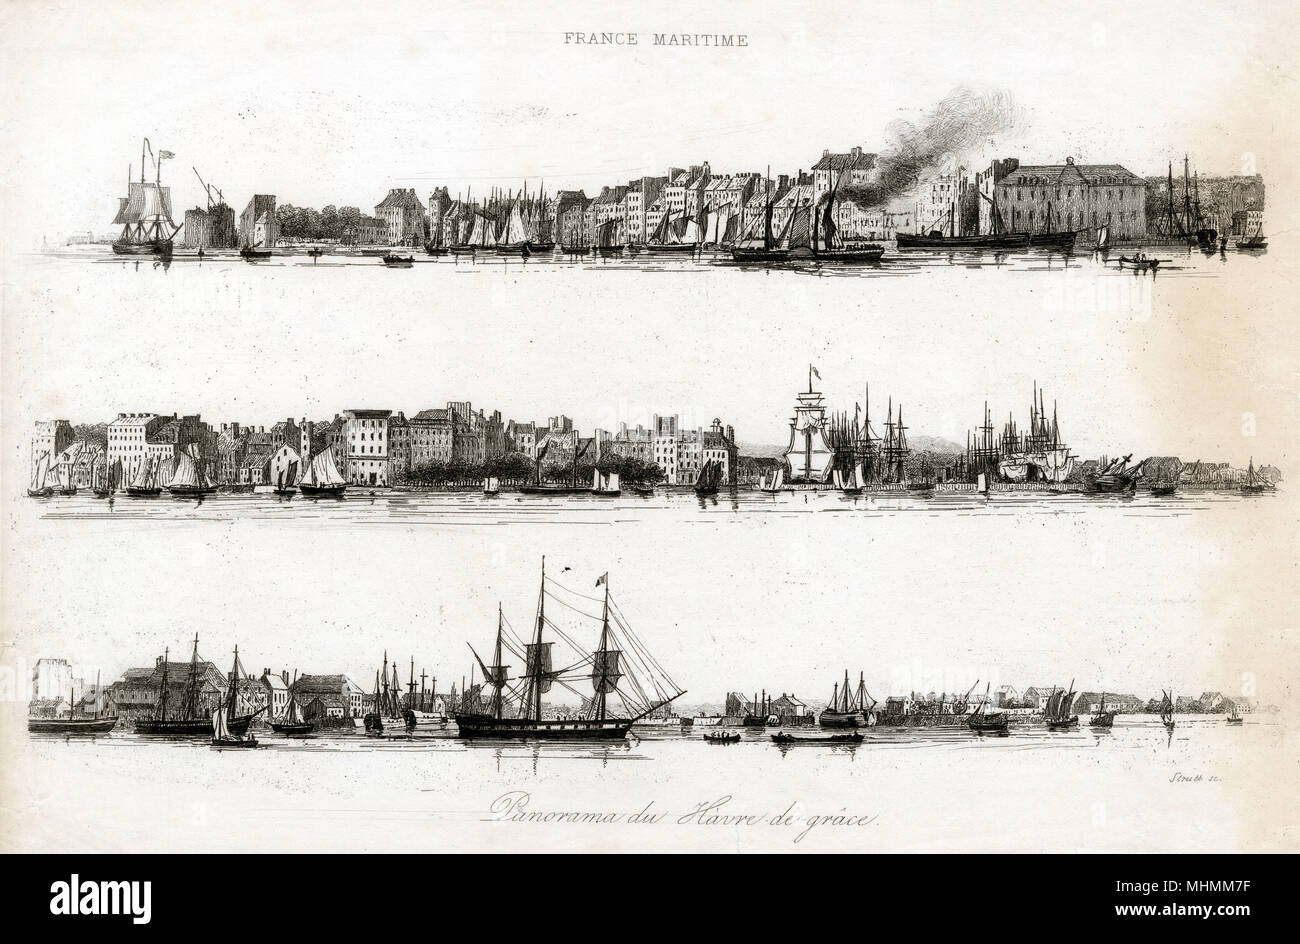 Vista panorámica de la costa en Le Havre : sólo uno steamboat es evidente entre los envíos. Fecha: circa 1835 Foto de stock